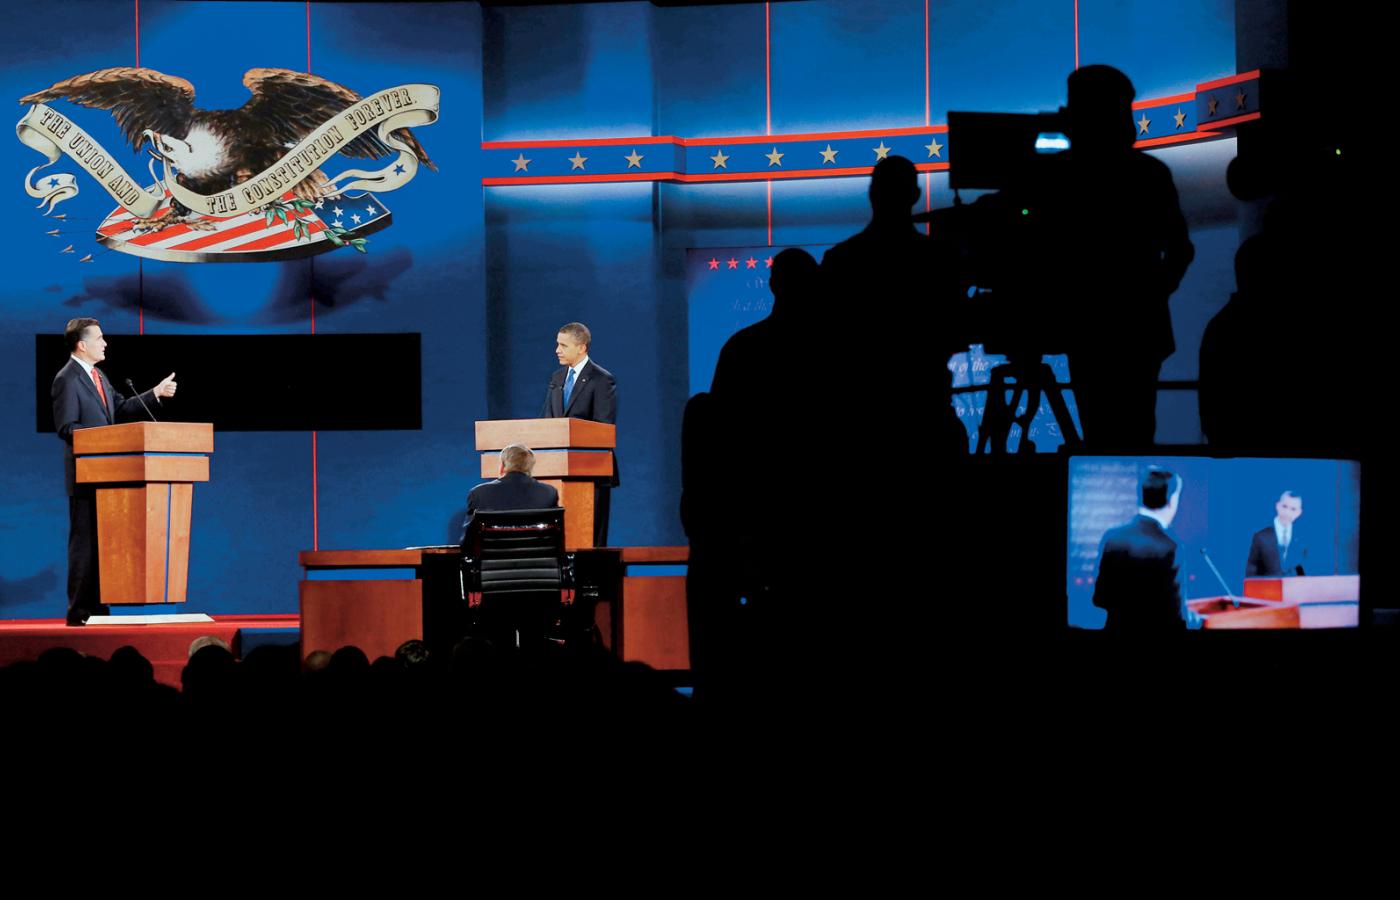 Pierwsza debata w tej kampanii. Romney przez półtorej godziny był stale uśmiechnięty i pewny siebie, Obama stał ze wzrokiem zatopionym w notatkach